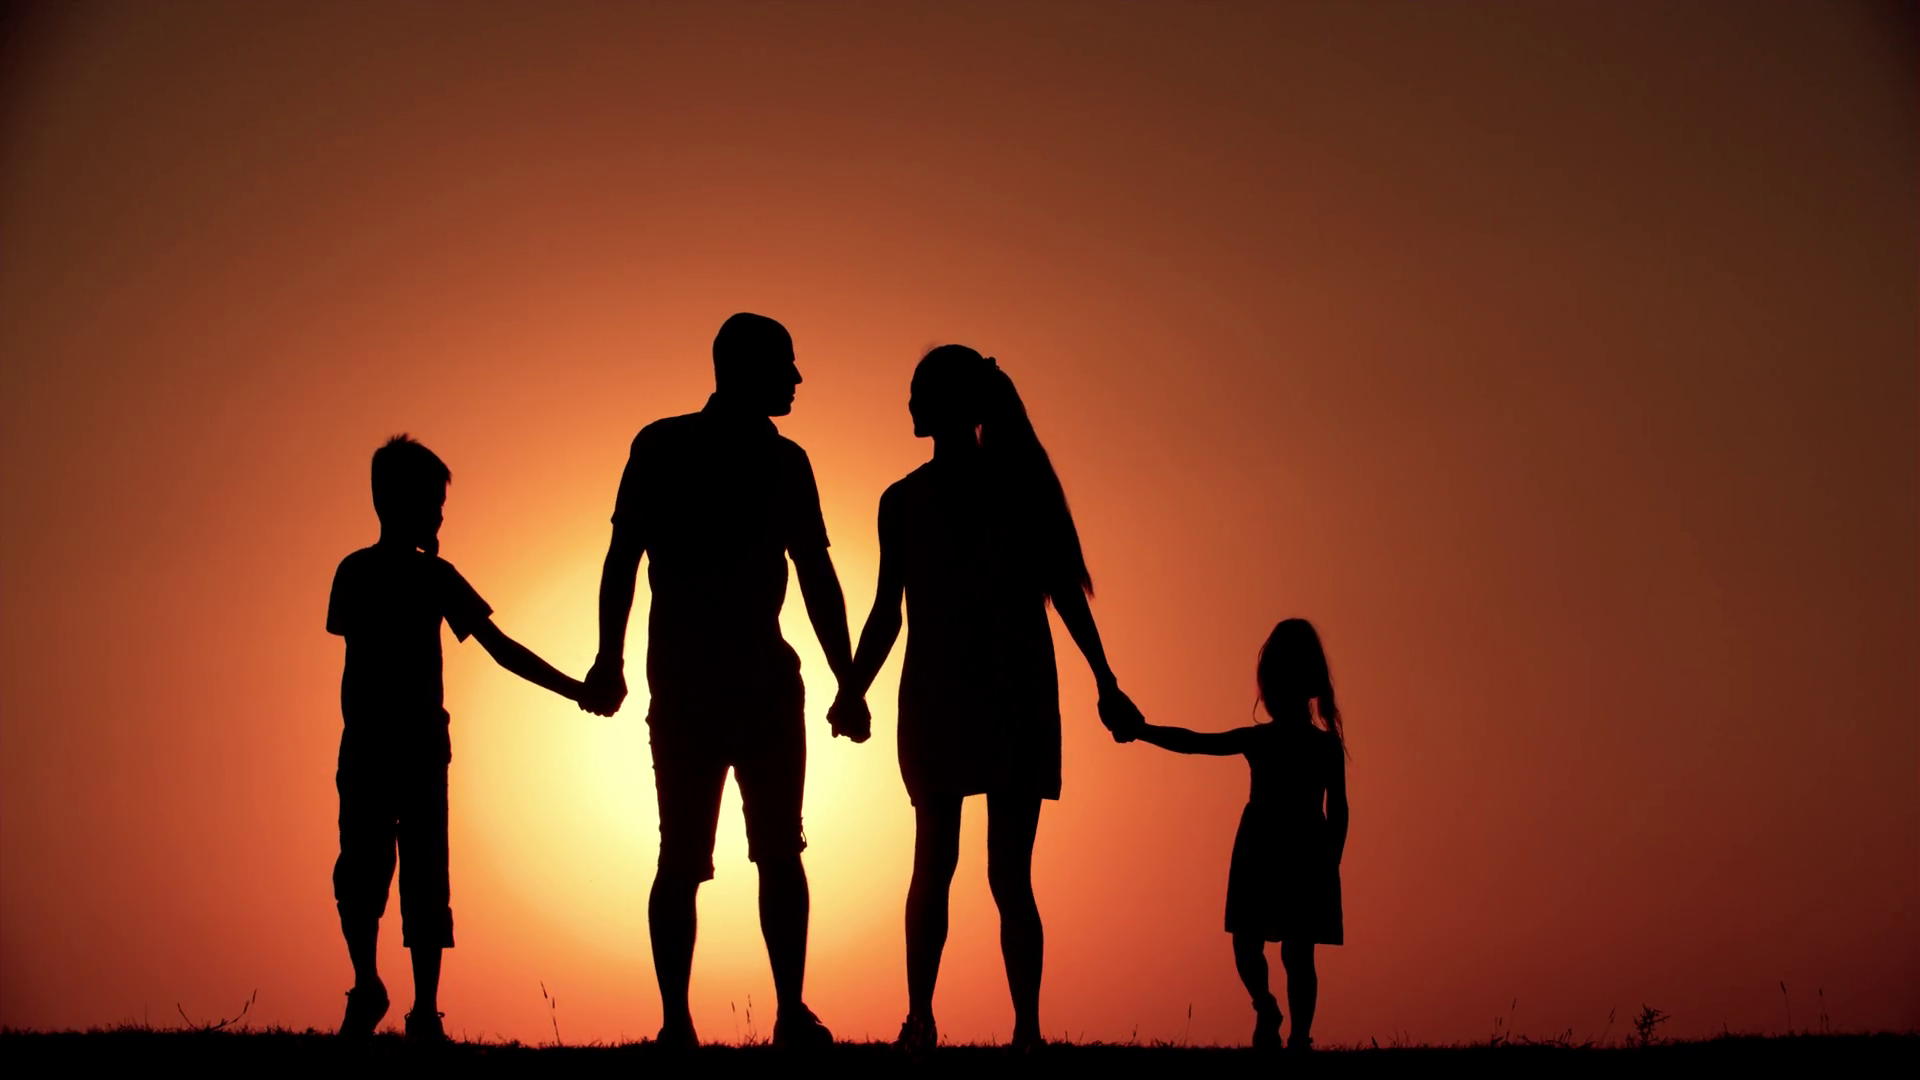 Gia đình hạnh phúc ý nghĩa: Chia sẻ niềm vui gia đình với những bức ảnh thể hiện sự hạnh phúc và ý nghĩa của một gia đình. Hãy cùng nâng niu tình thân trong cuộc sống và chia sẻ trách nhiệm với những người thân yêu.